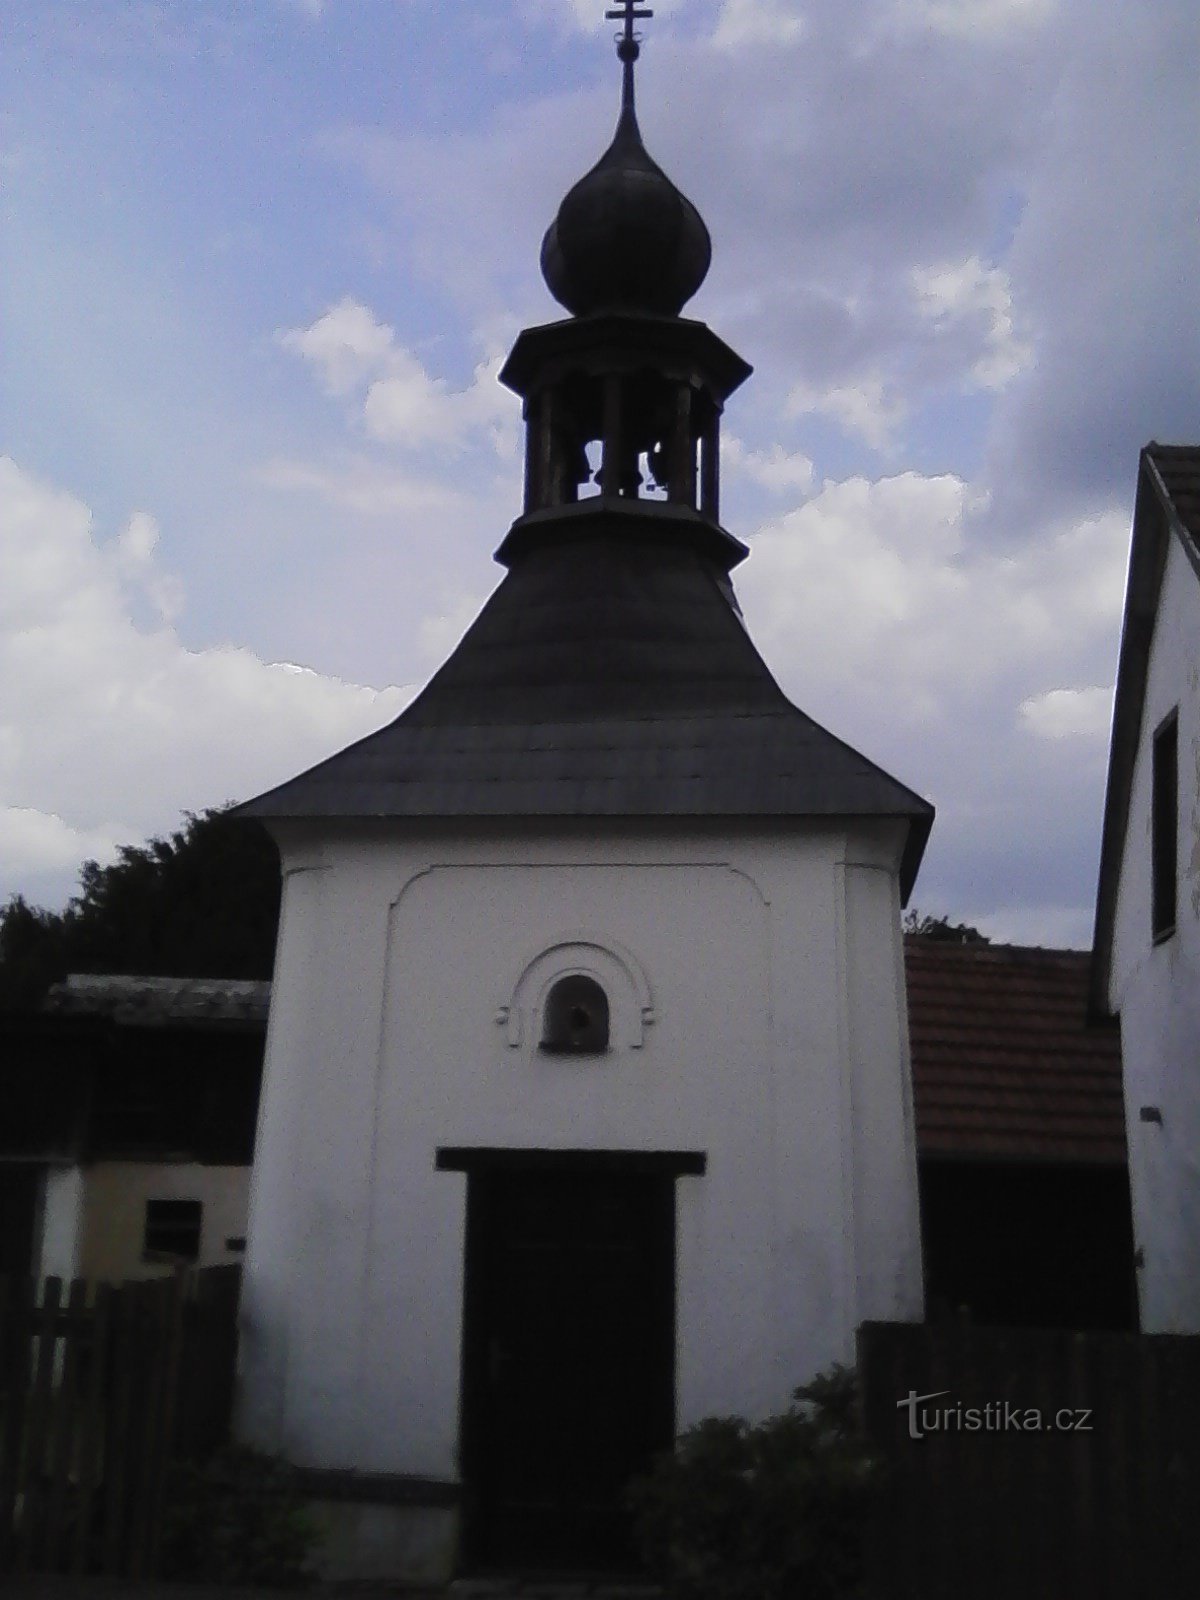 2. Capela da aldeia em Horní Hořice.